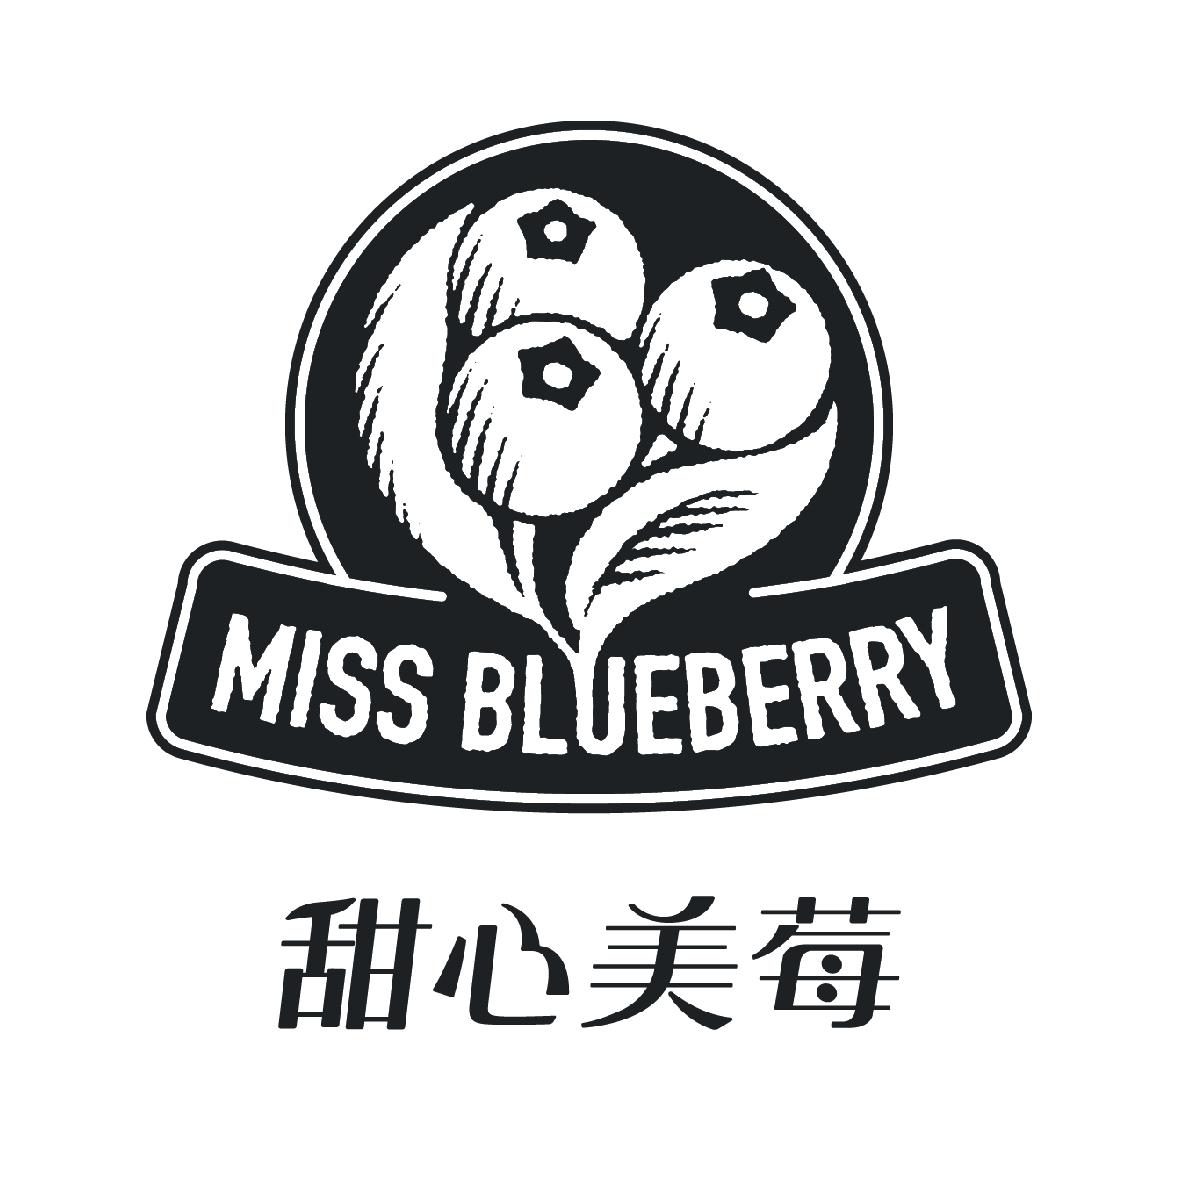 甜心美莓 miss blueberry